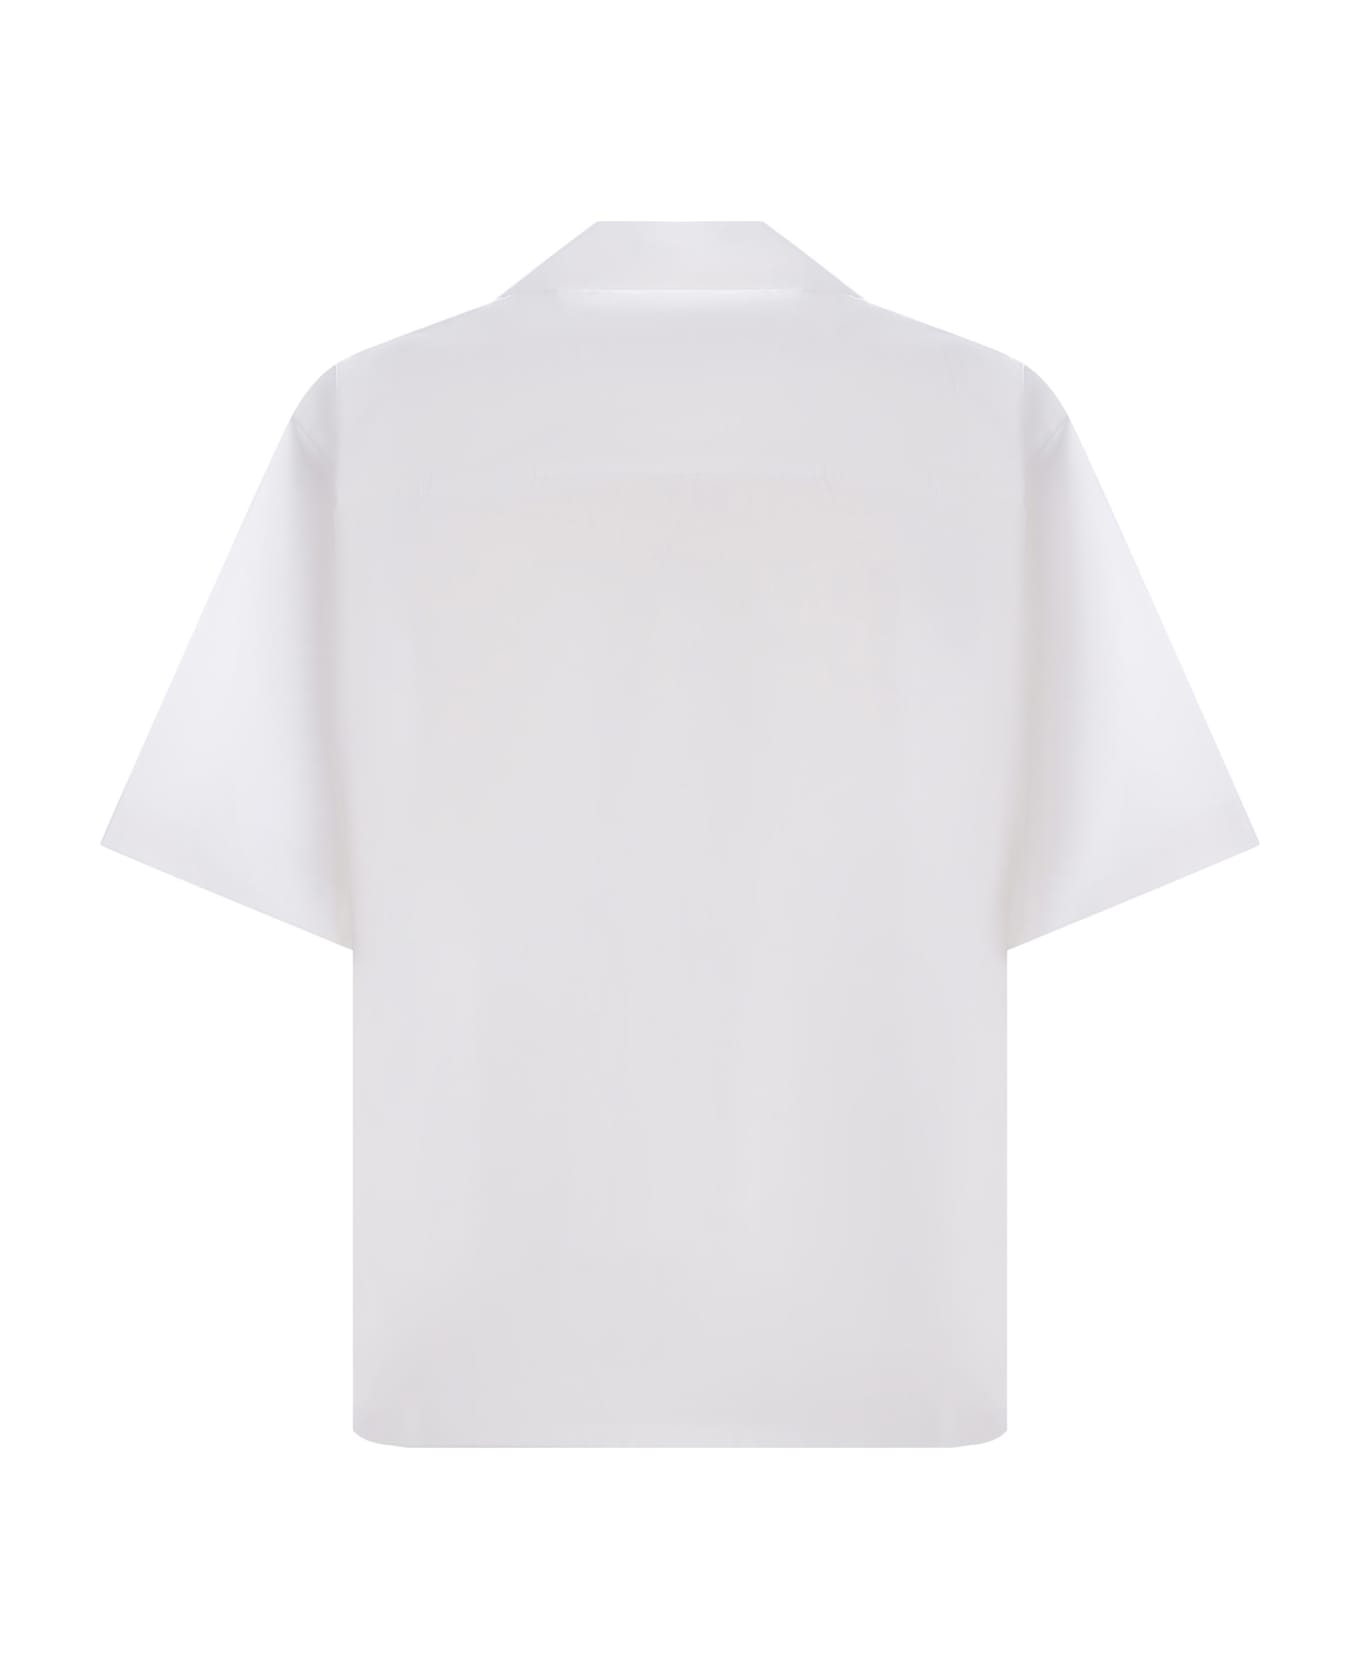 Marni Bowling Shirt Marni Made Of Cotton - Bianco